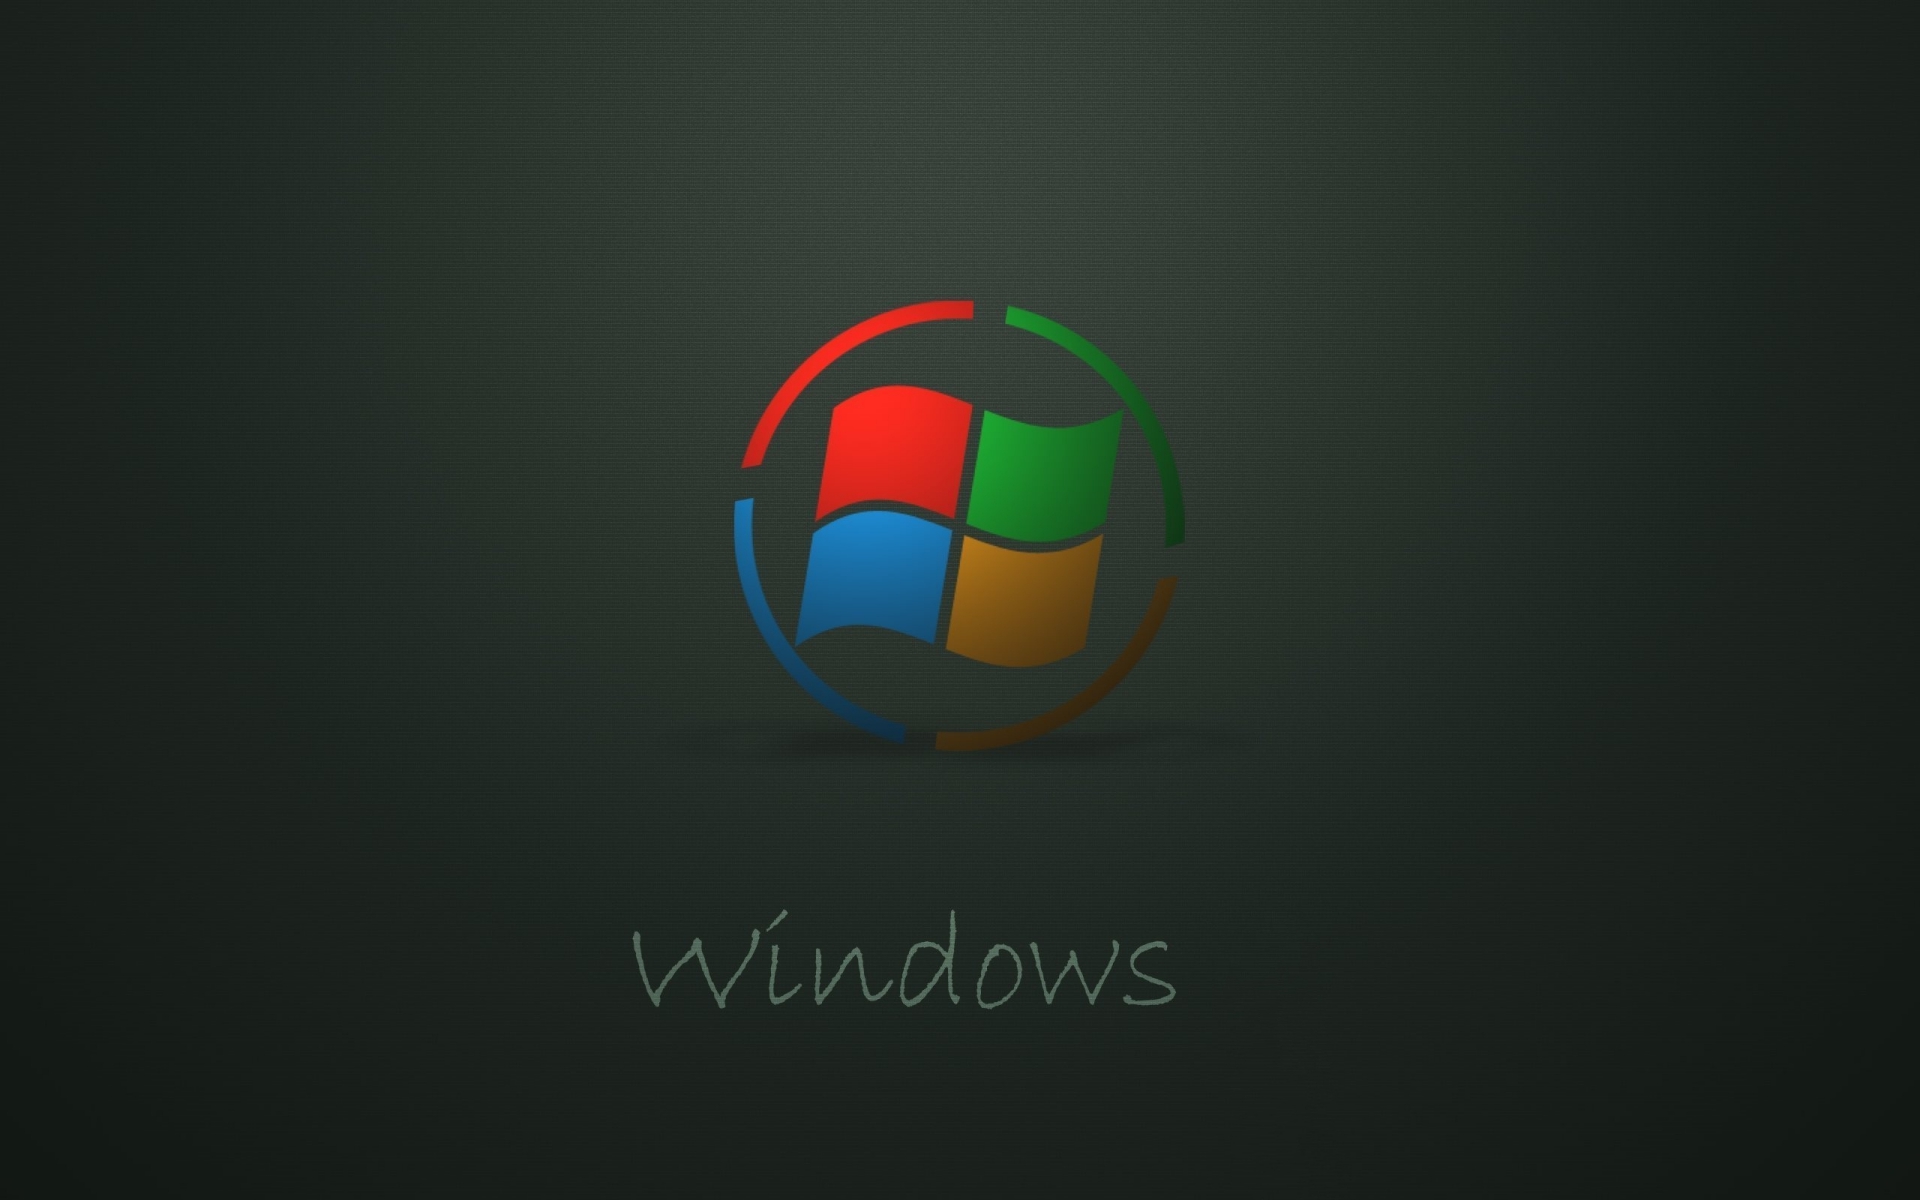 windows-logo-dark-background-1920x1200.jpg